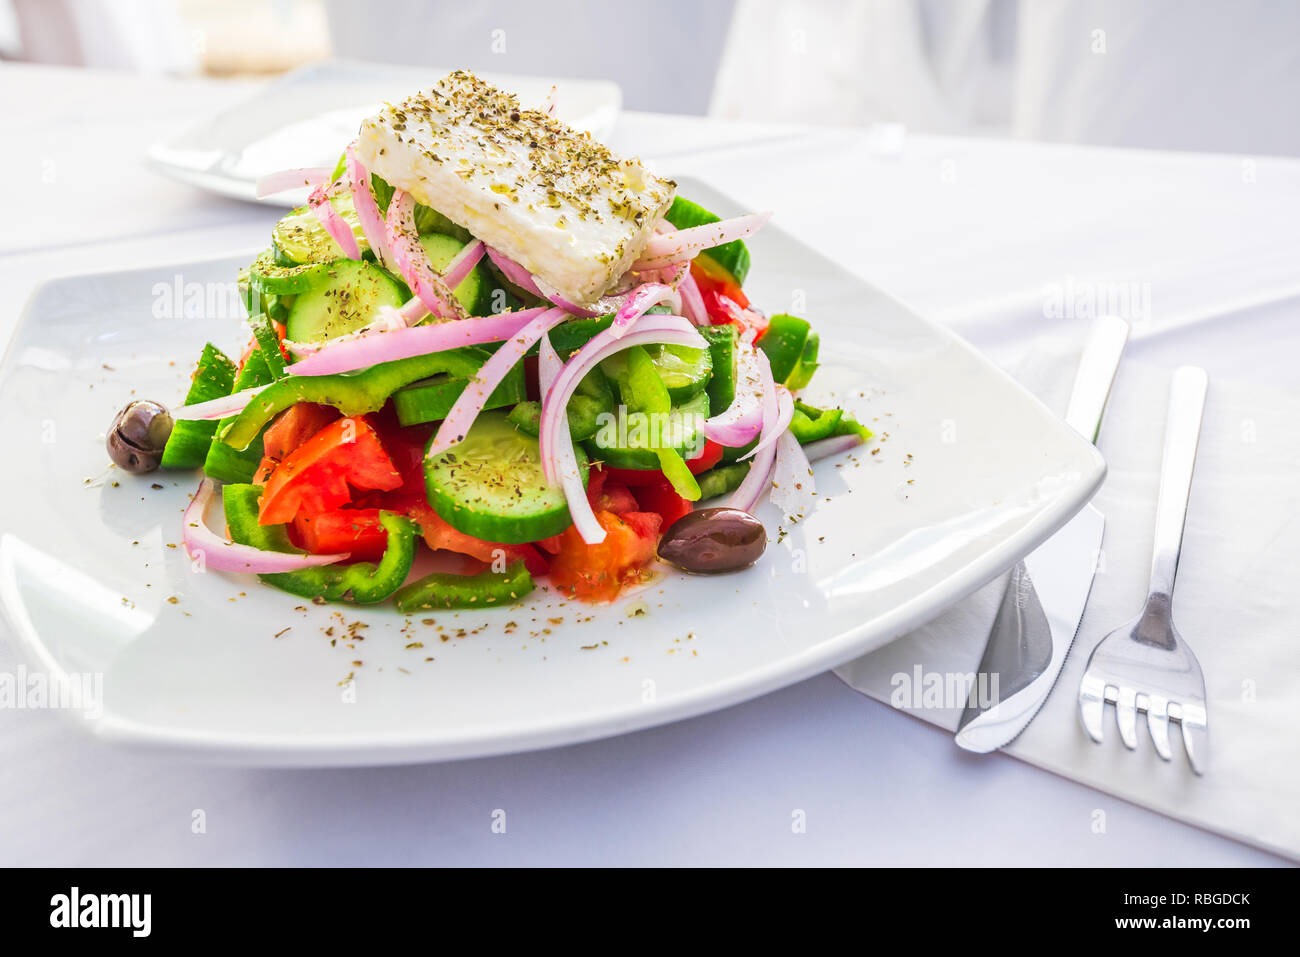 Salade grecque avec des légumes frais, fromage feta et olives, Grèce cuisine traditionnelle. Banque D'Images